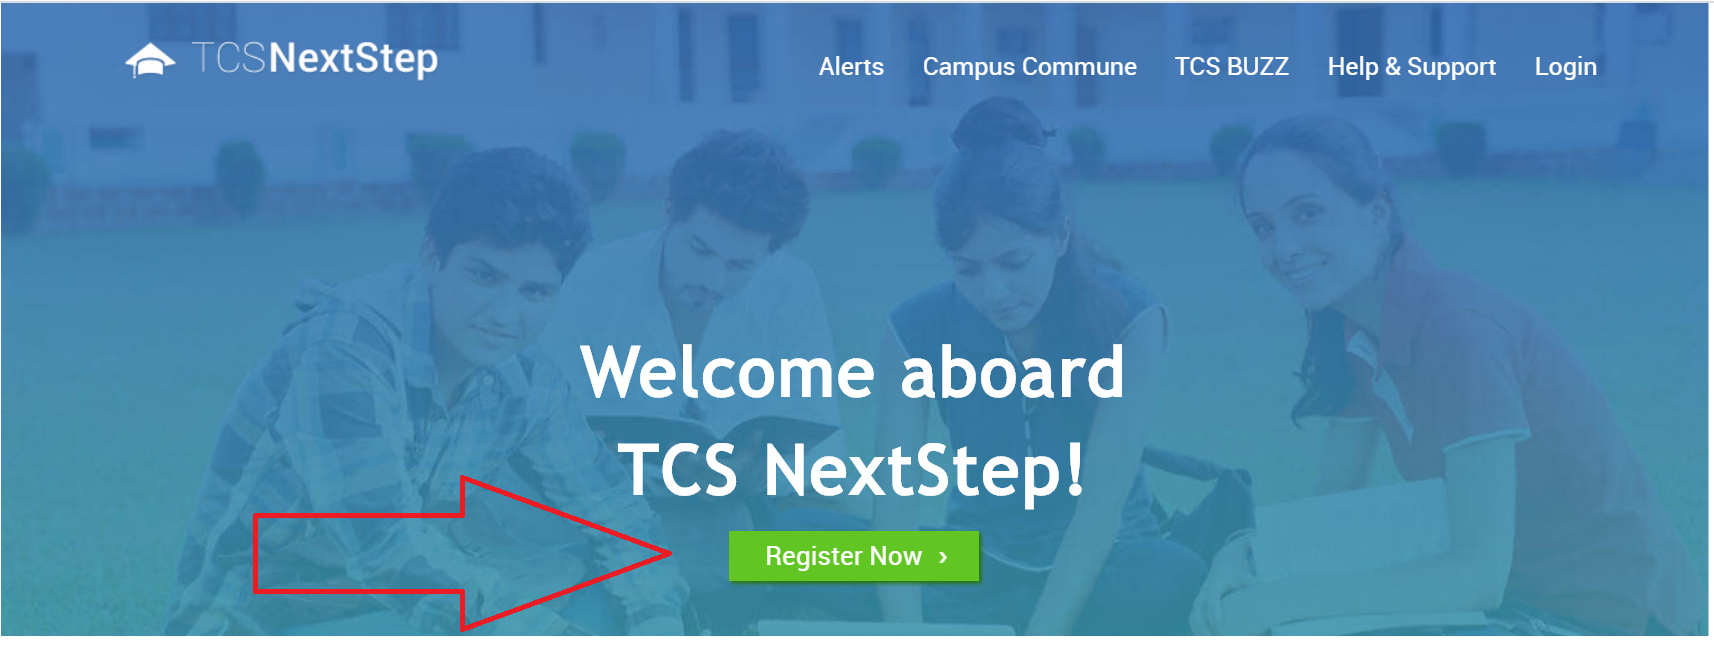 TCS NextStep